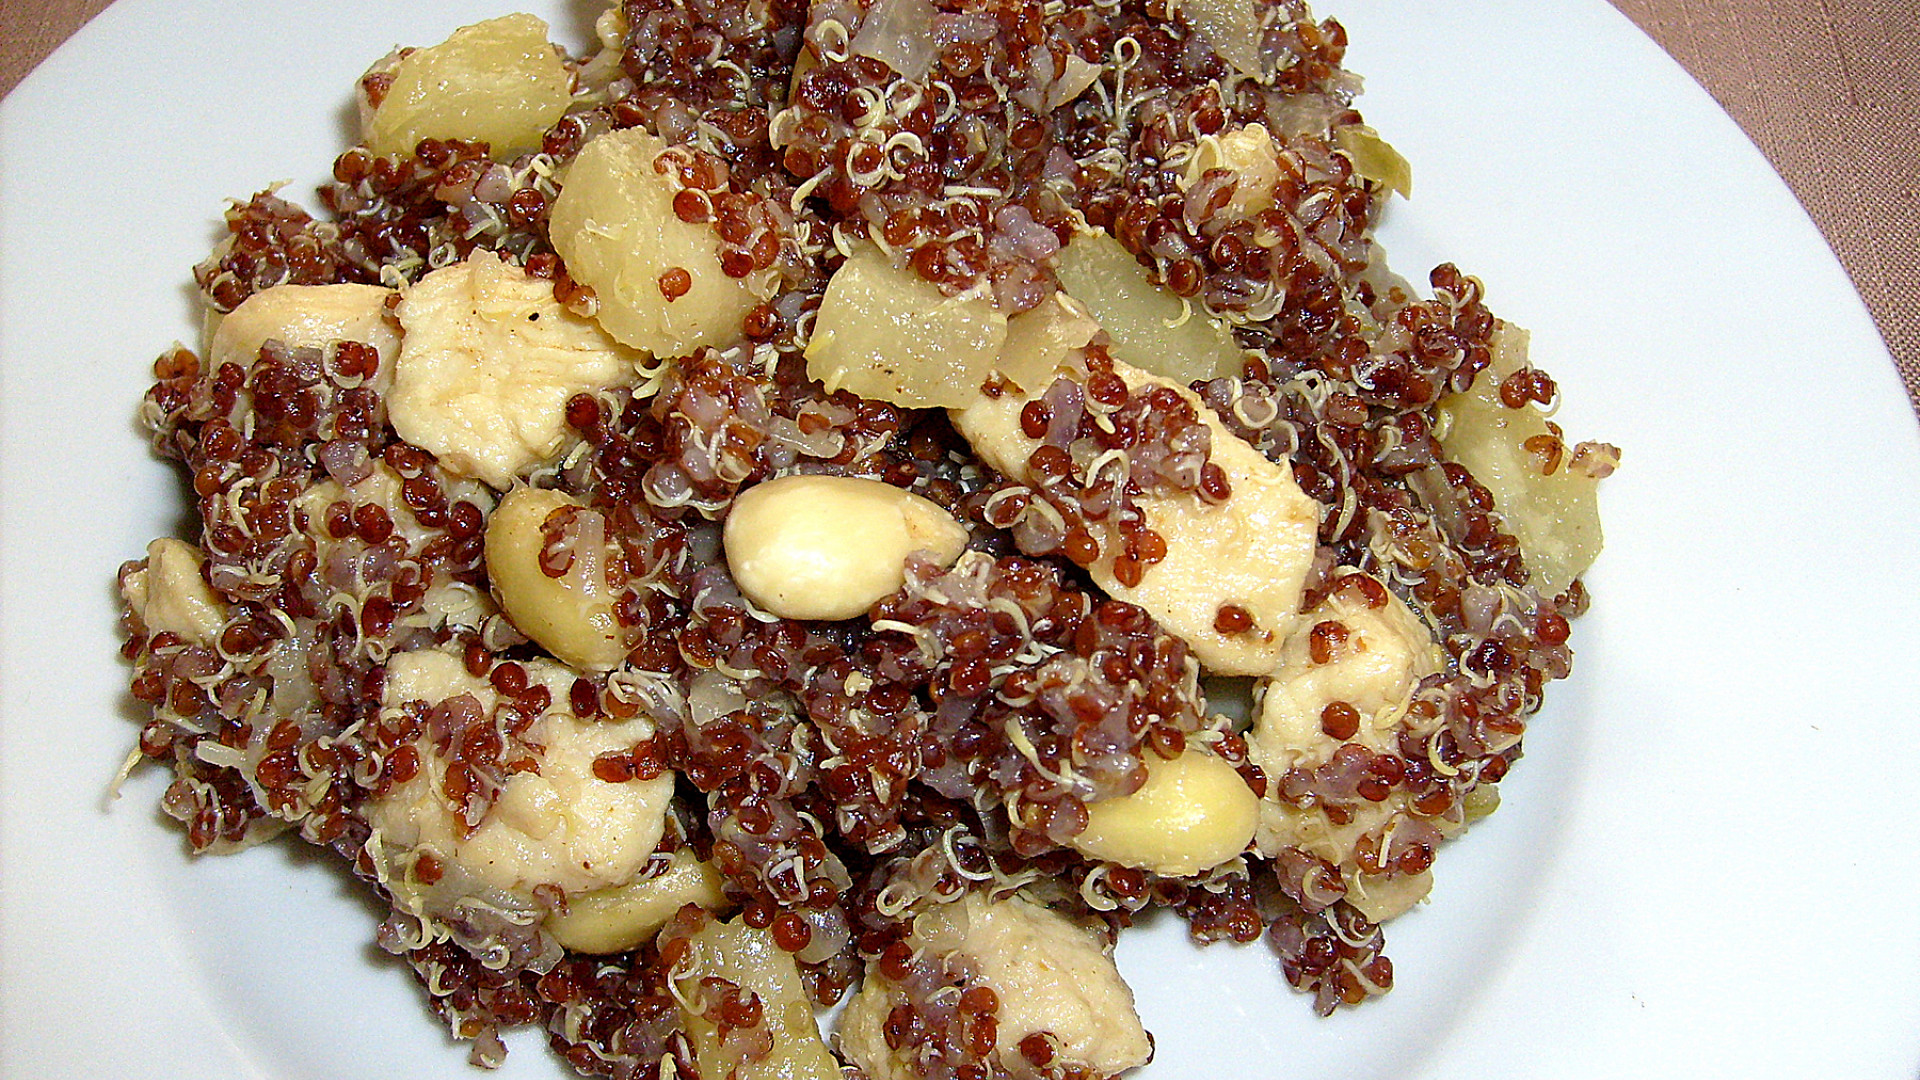 Červená quinoa s ananasem, mandlemi a kuřecím